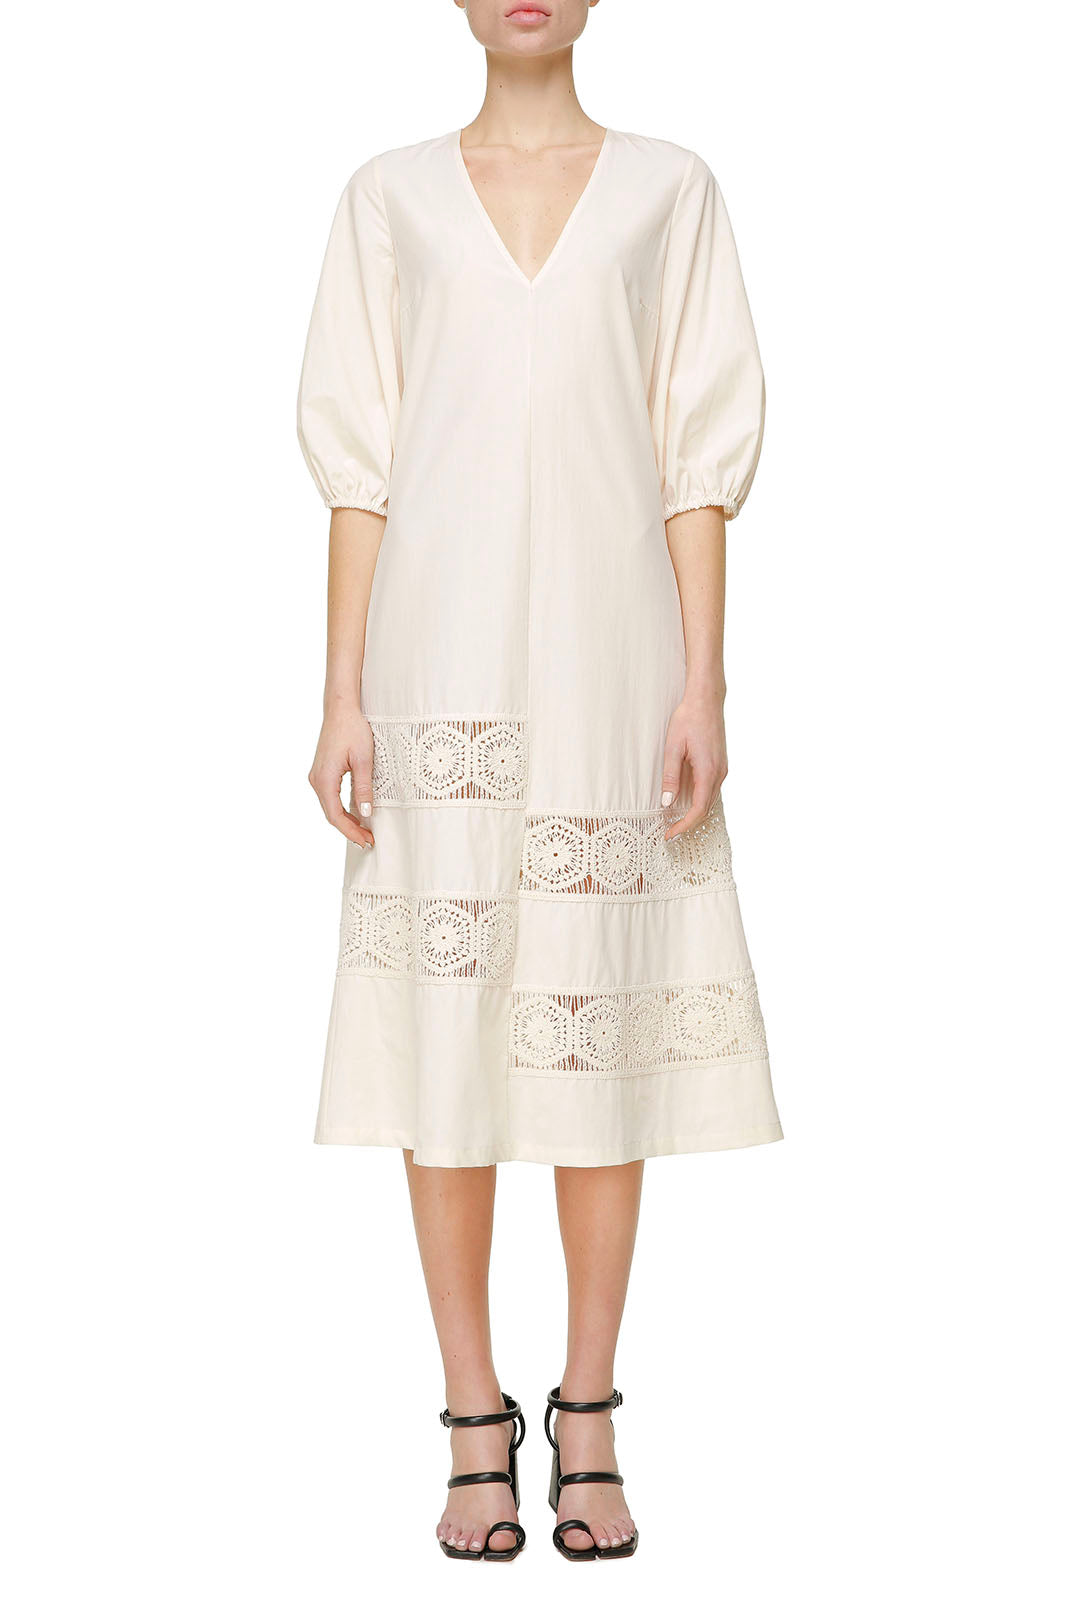 Light cotton beige dress with lace details